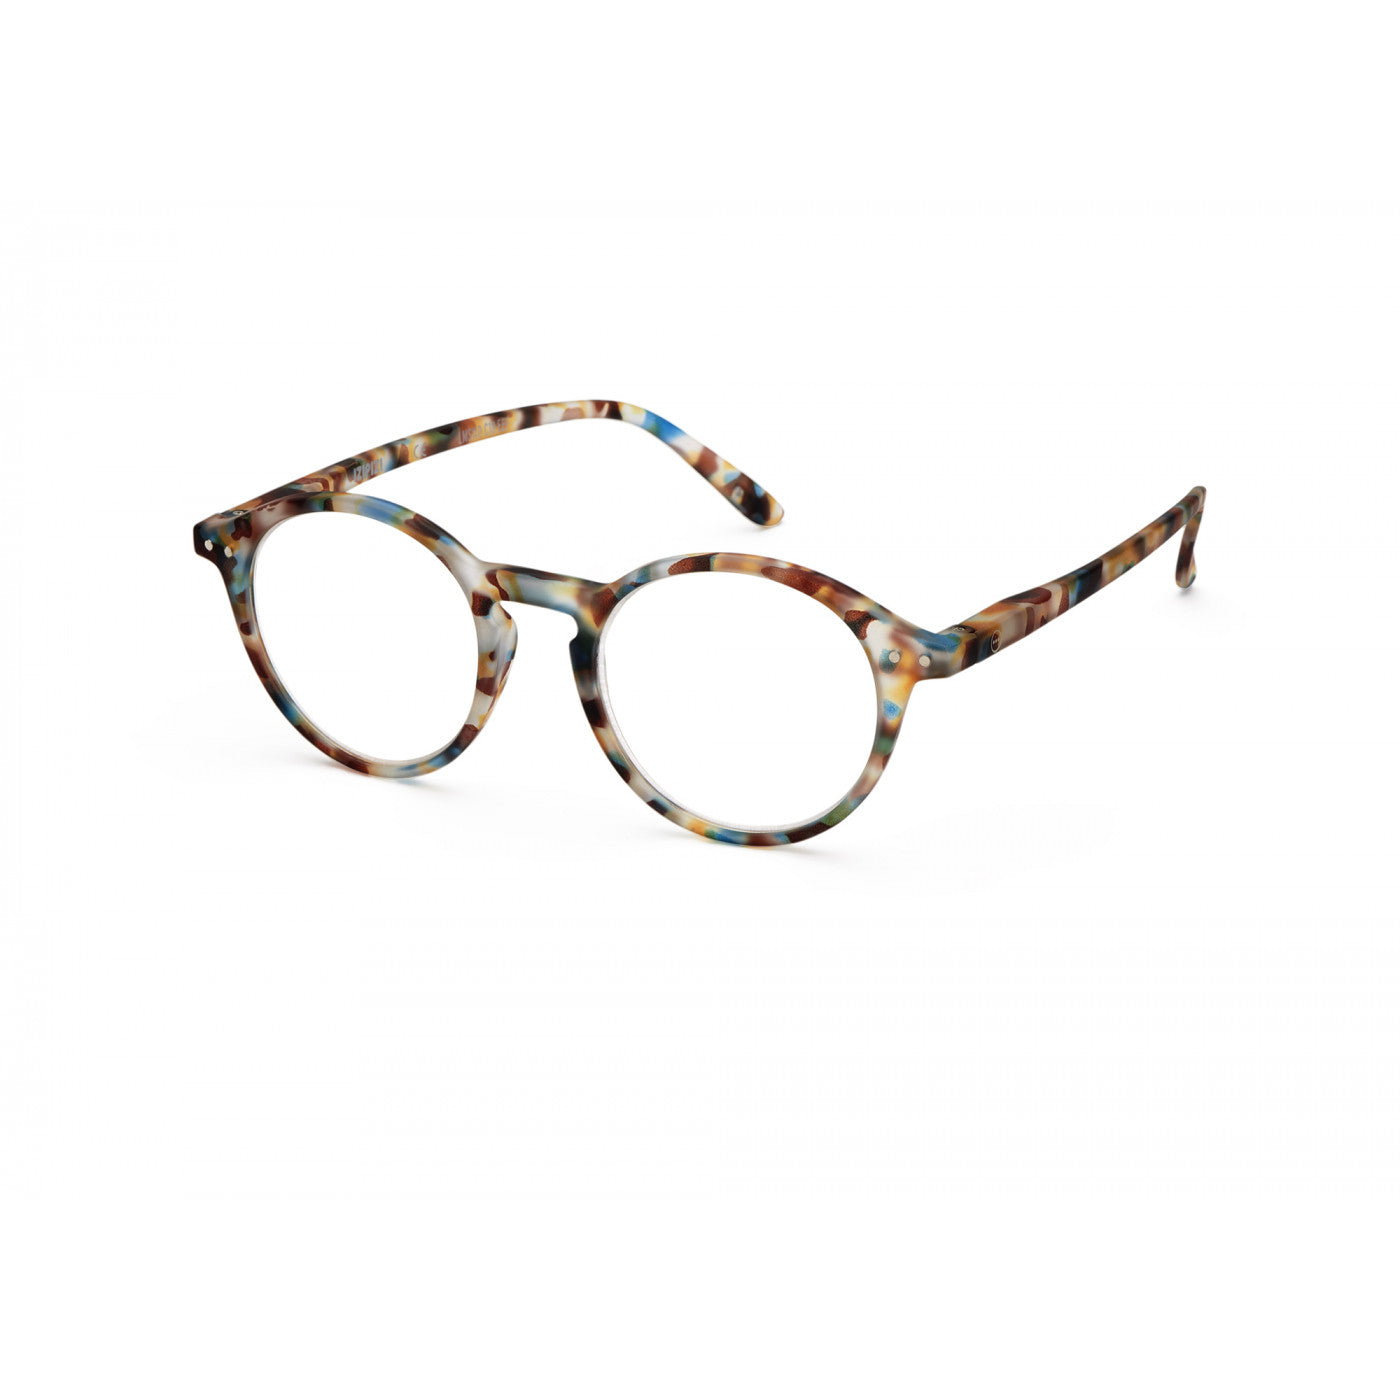 Unisex Reading Glasses - Style D - Blue Tortoise 2